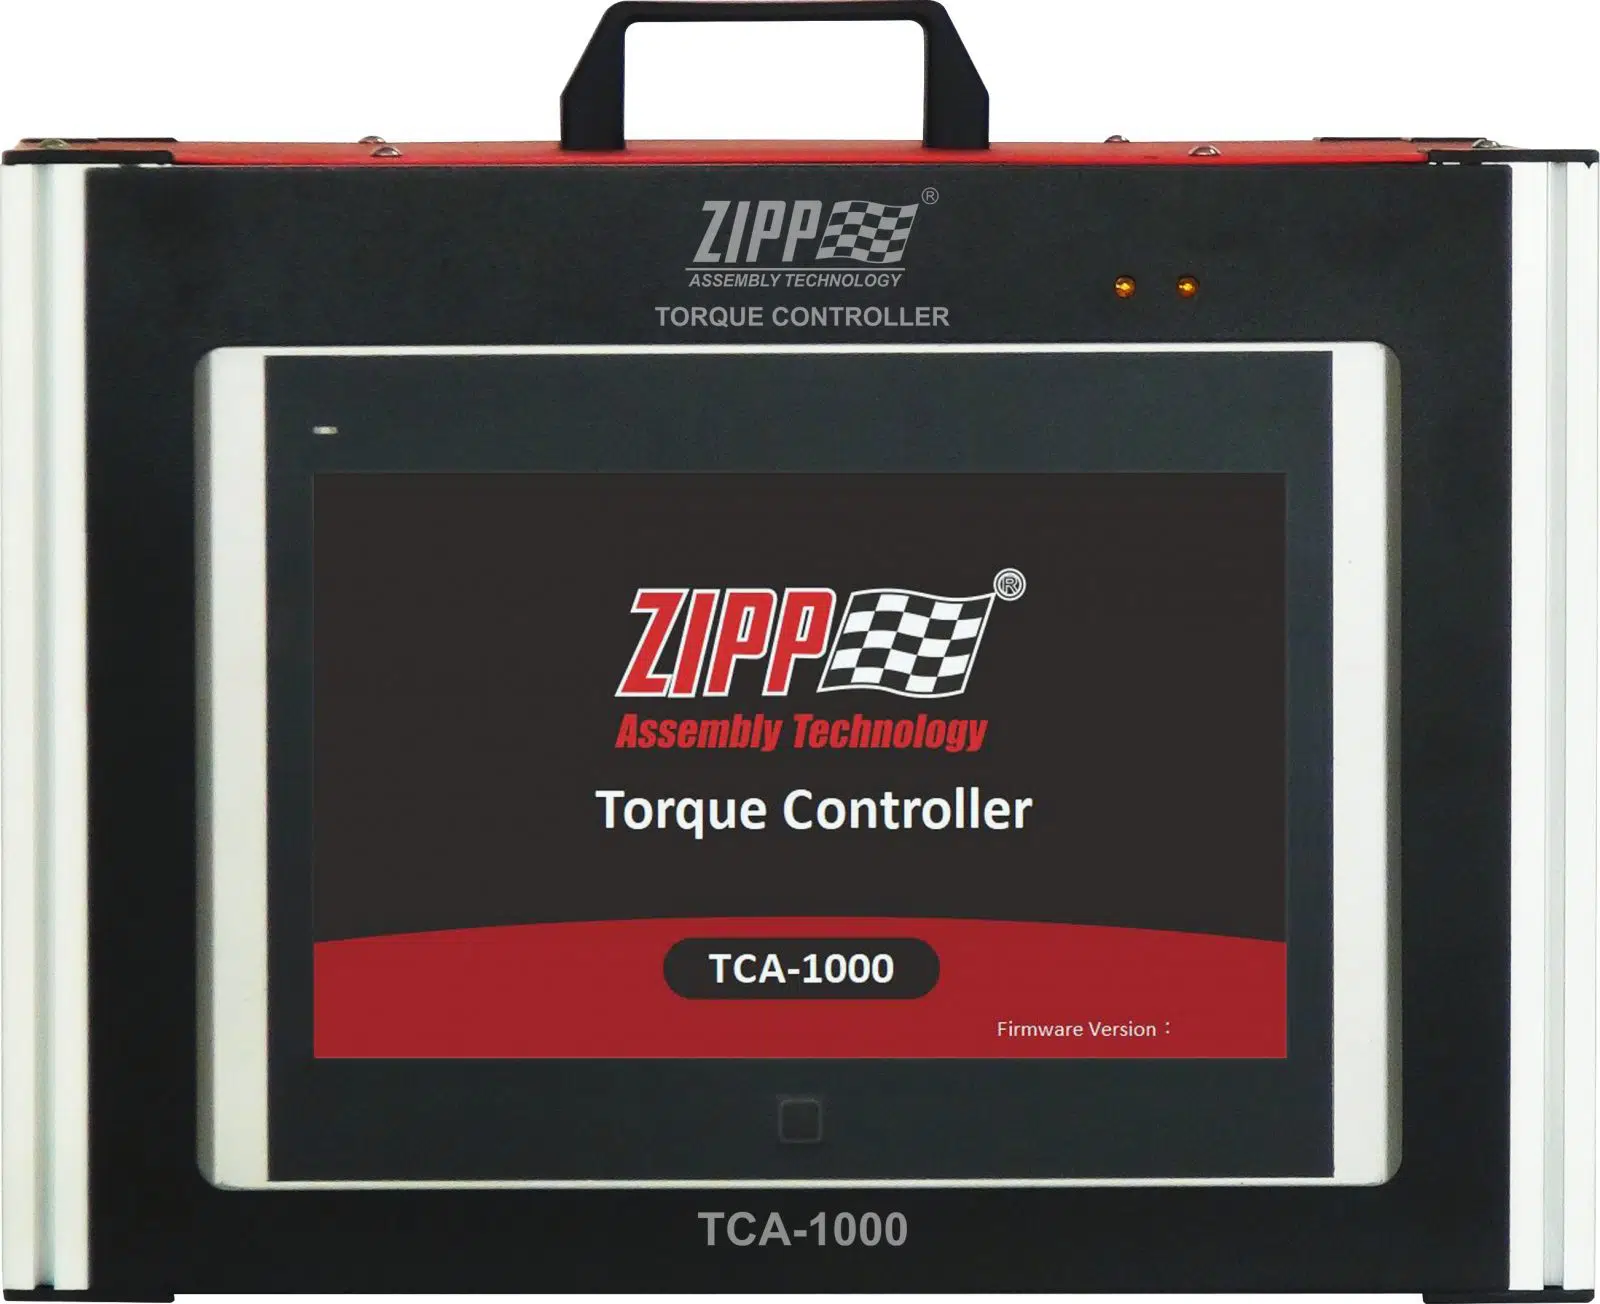 ZIPPTORK Smart Torque Controller Interface Instructional Video